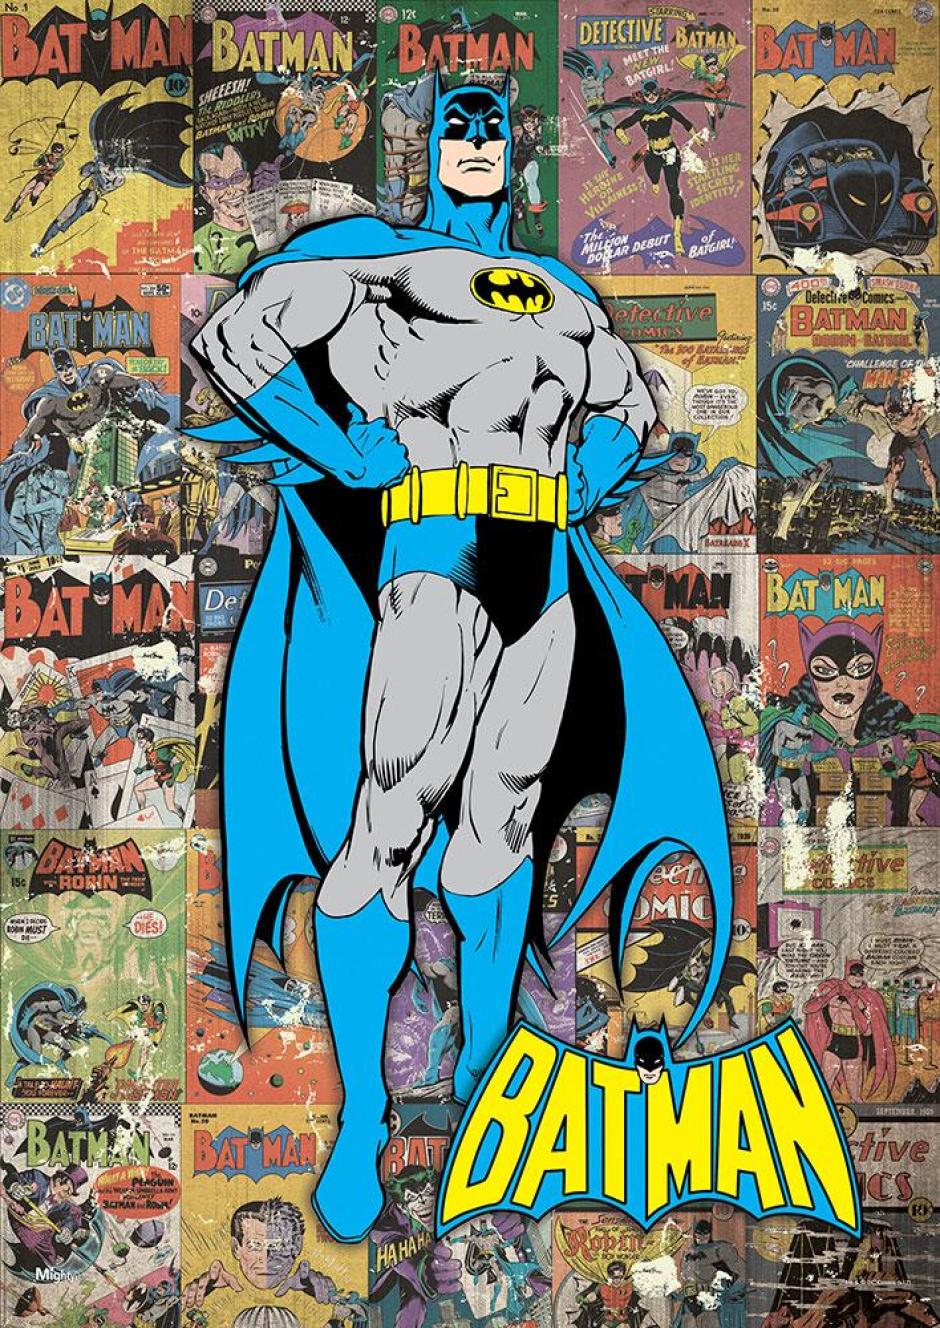 El primer comic de Batman se publicó el 30 de marzo de 1939 por DC Comics